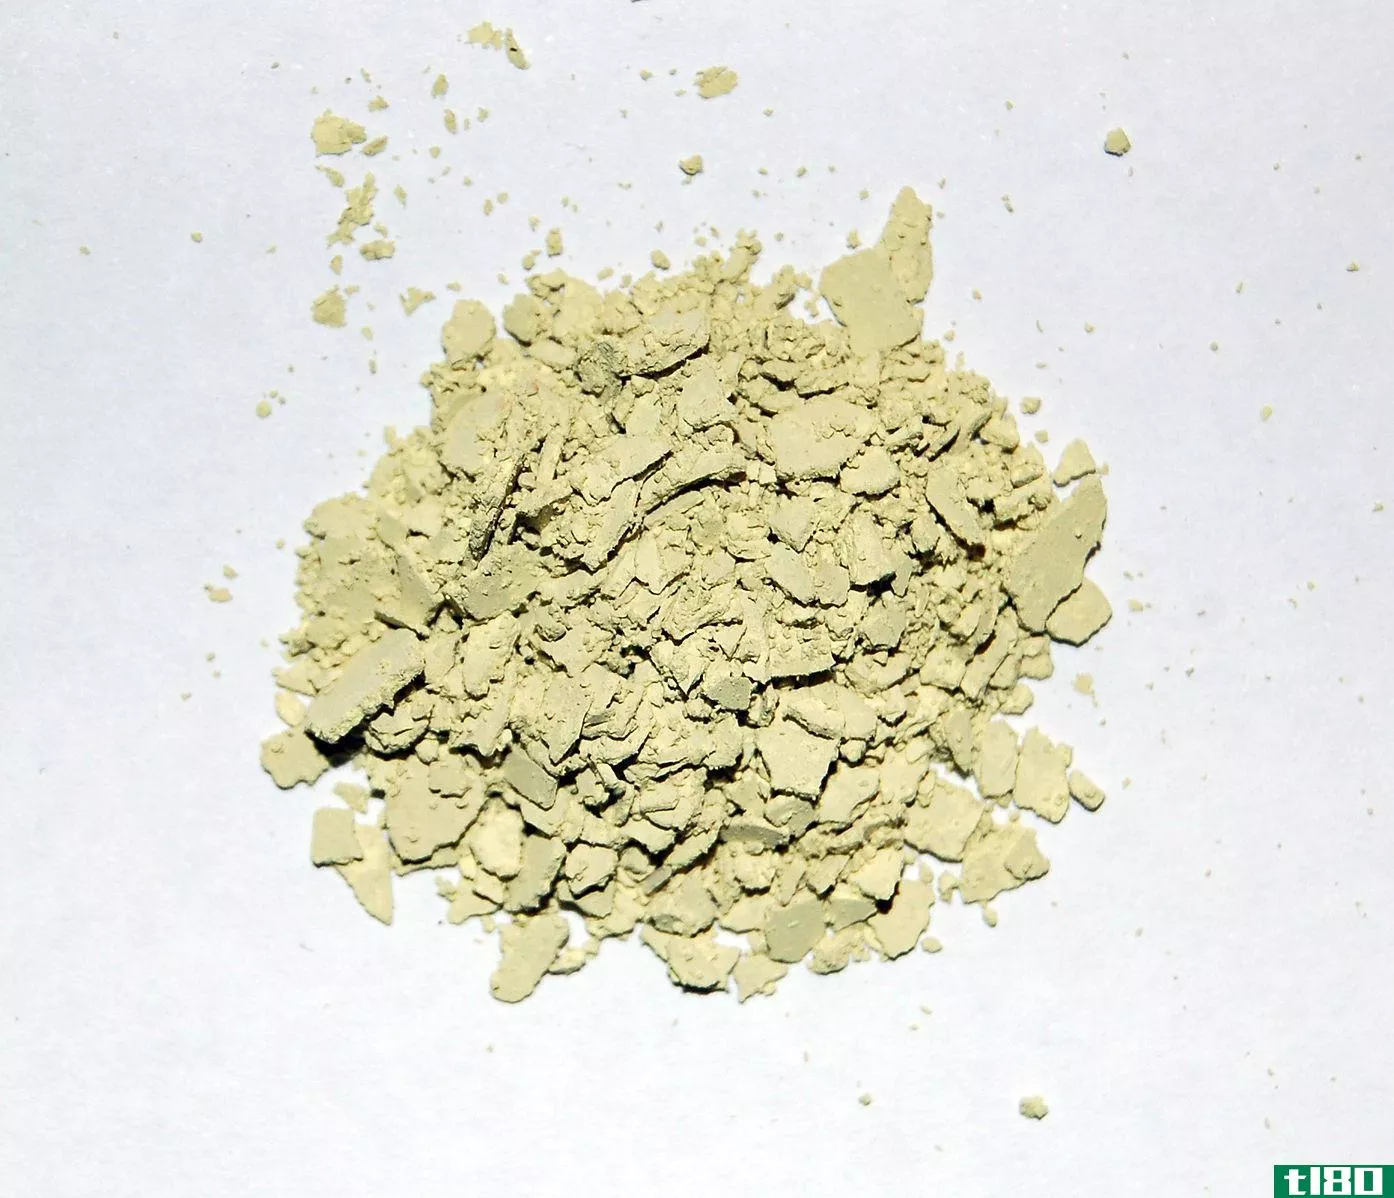 胶原蛋白粉(collagen powder)和胶原蛋白丸(collagen pills)的区别